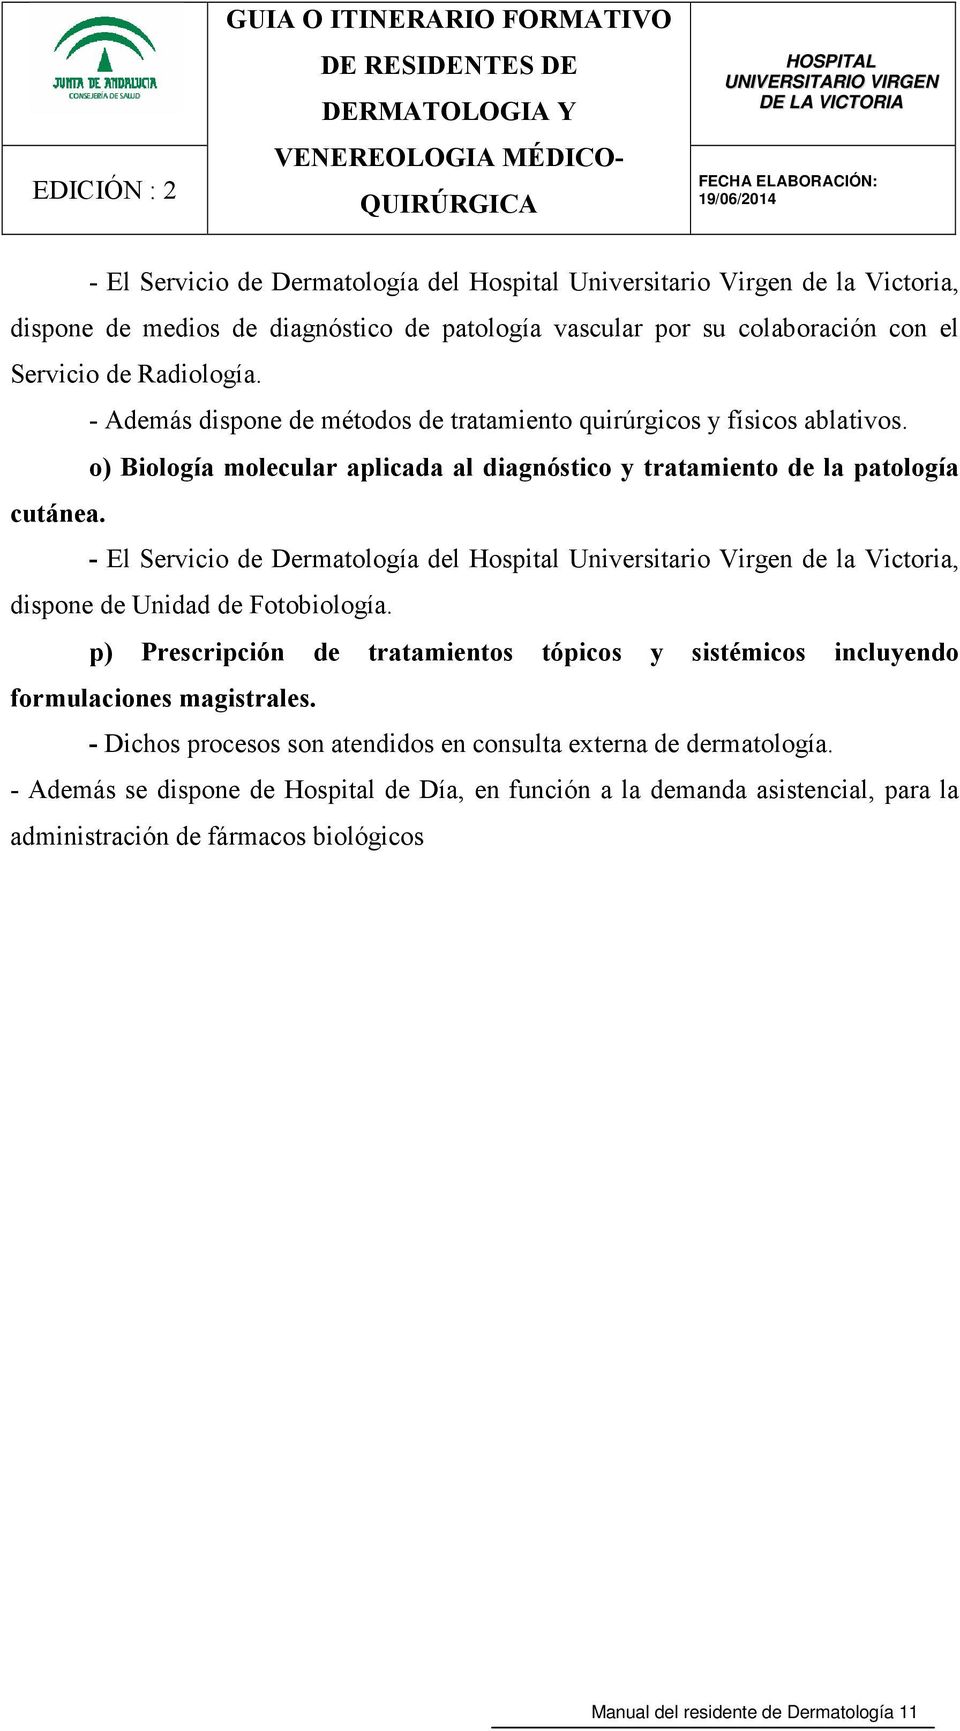 - El Servicio de Dermatología del Hospital Universitario Virgen de la Victoria, dispone de Unidad de Fotobiología.